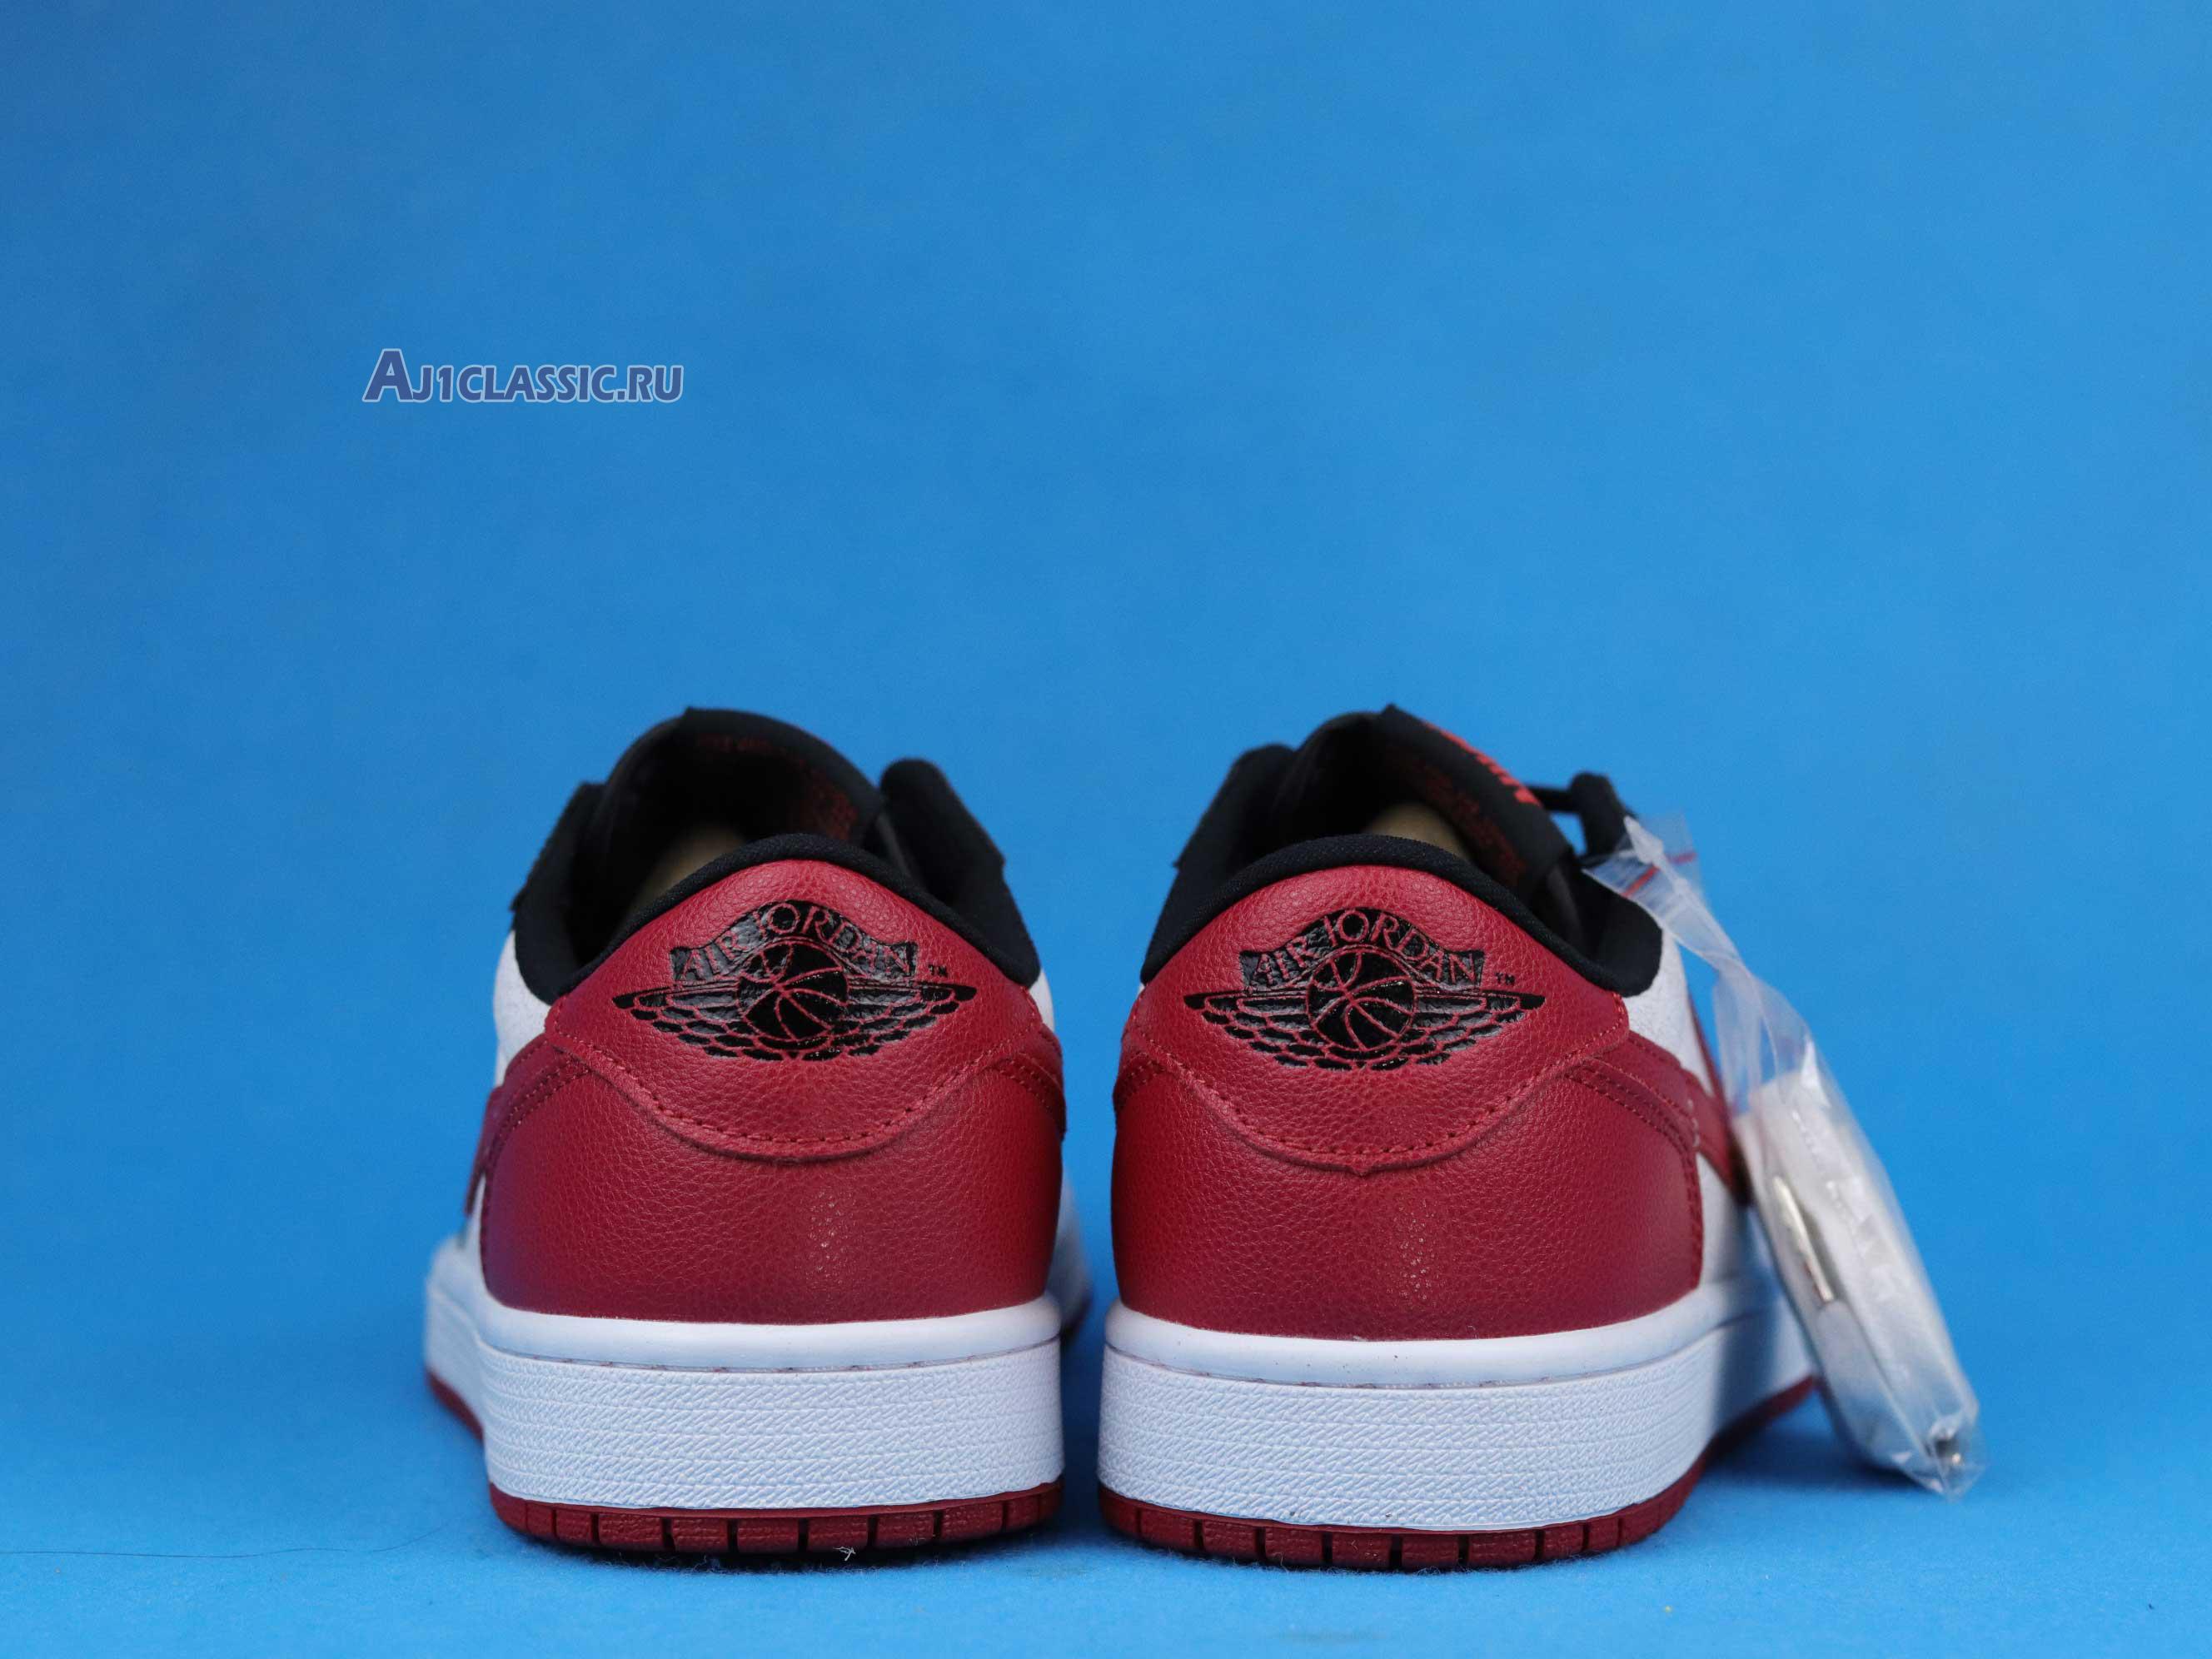 Air Jordan 1 Low "Gym Red - Black" CW0192-200